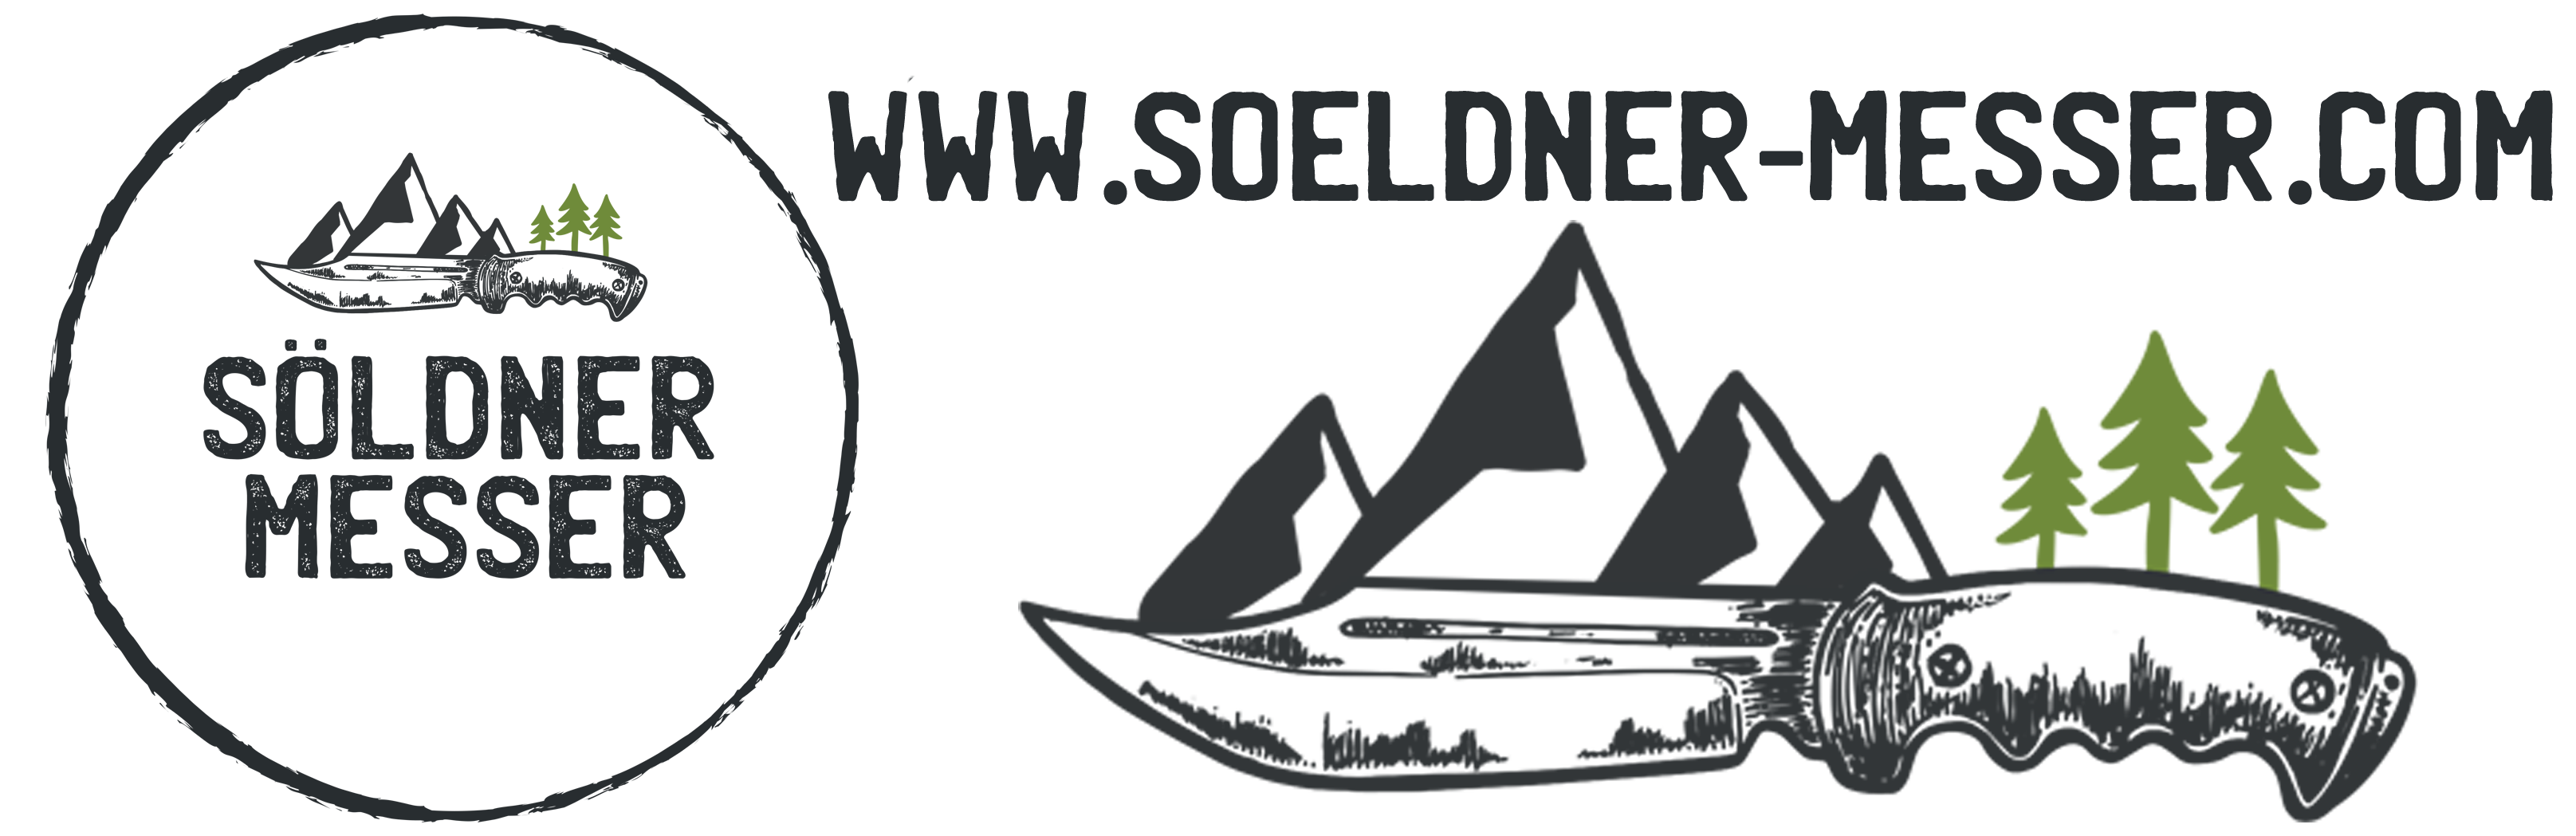 Service | Söldner-Messerladen